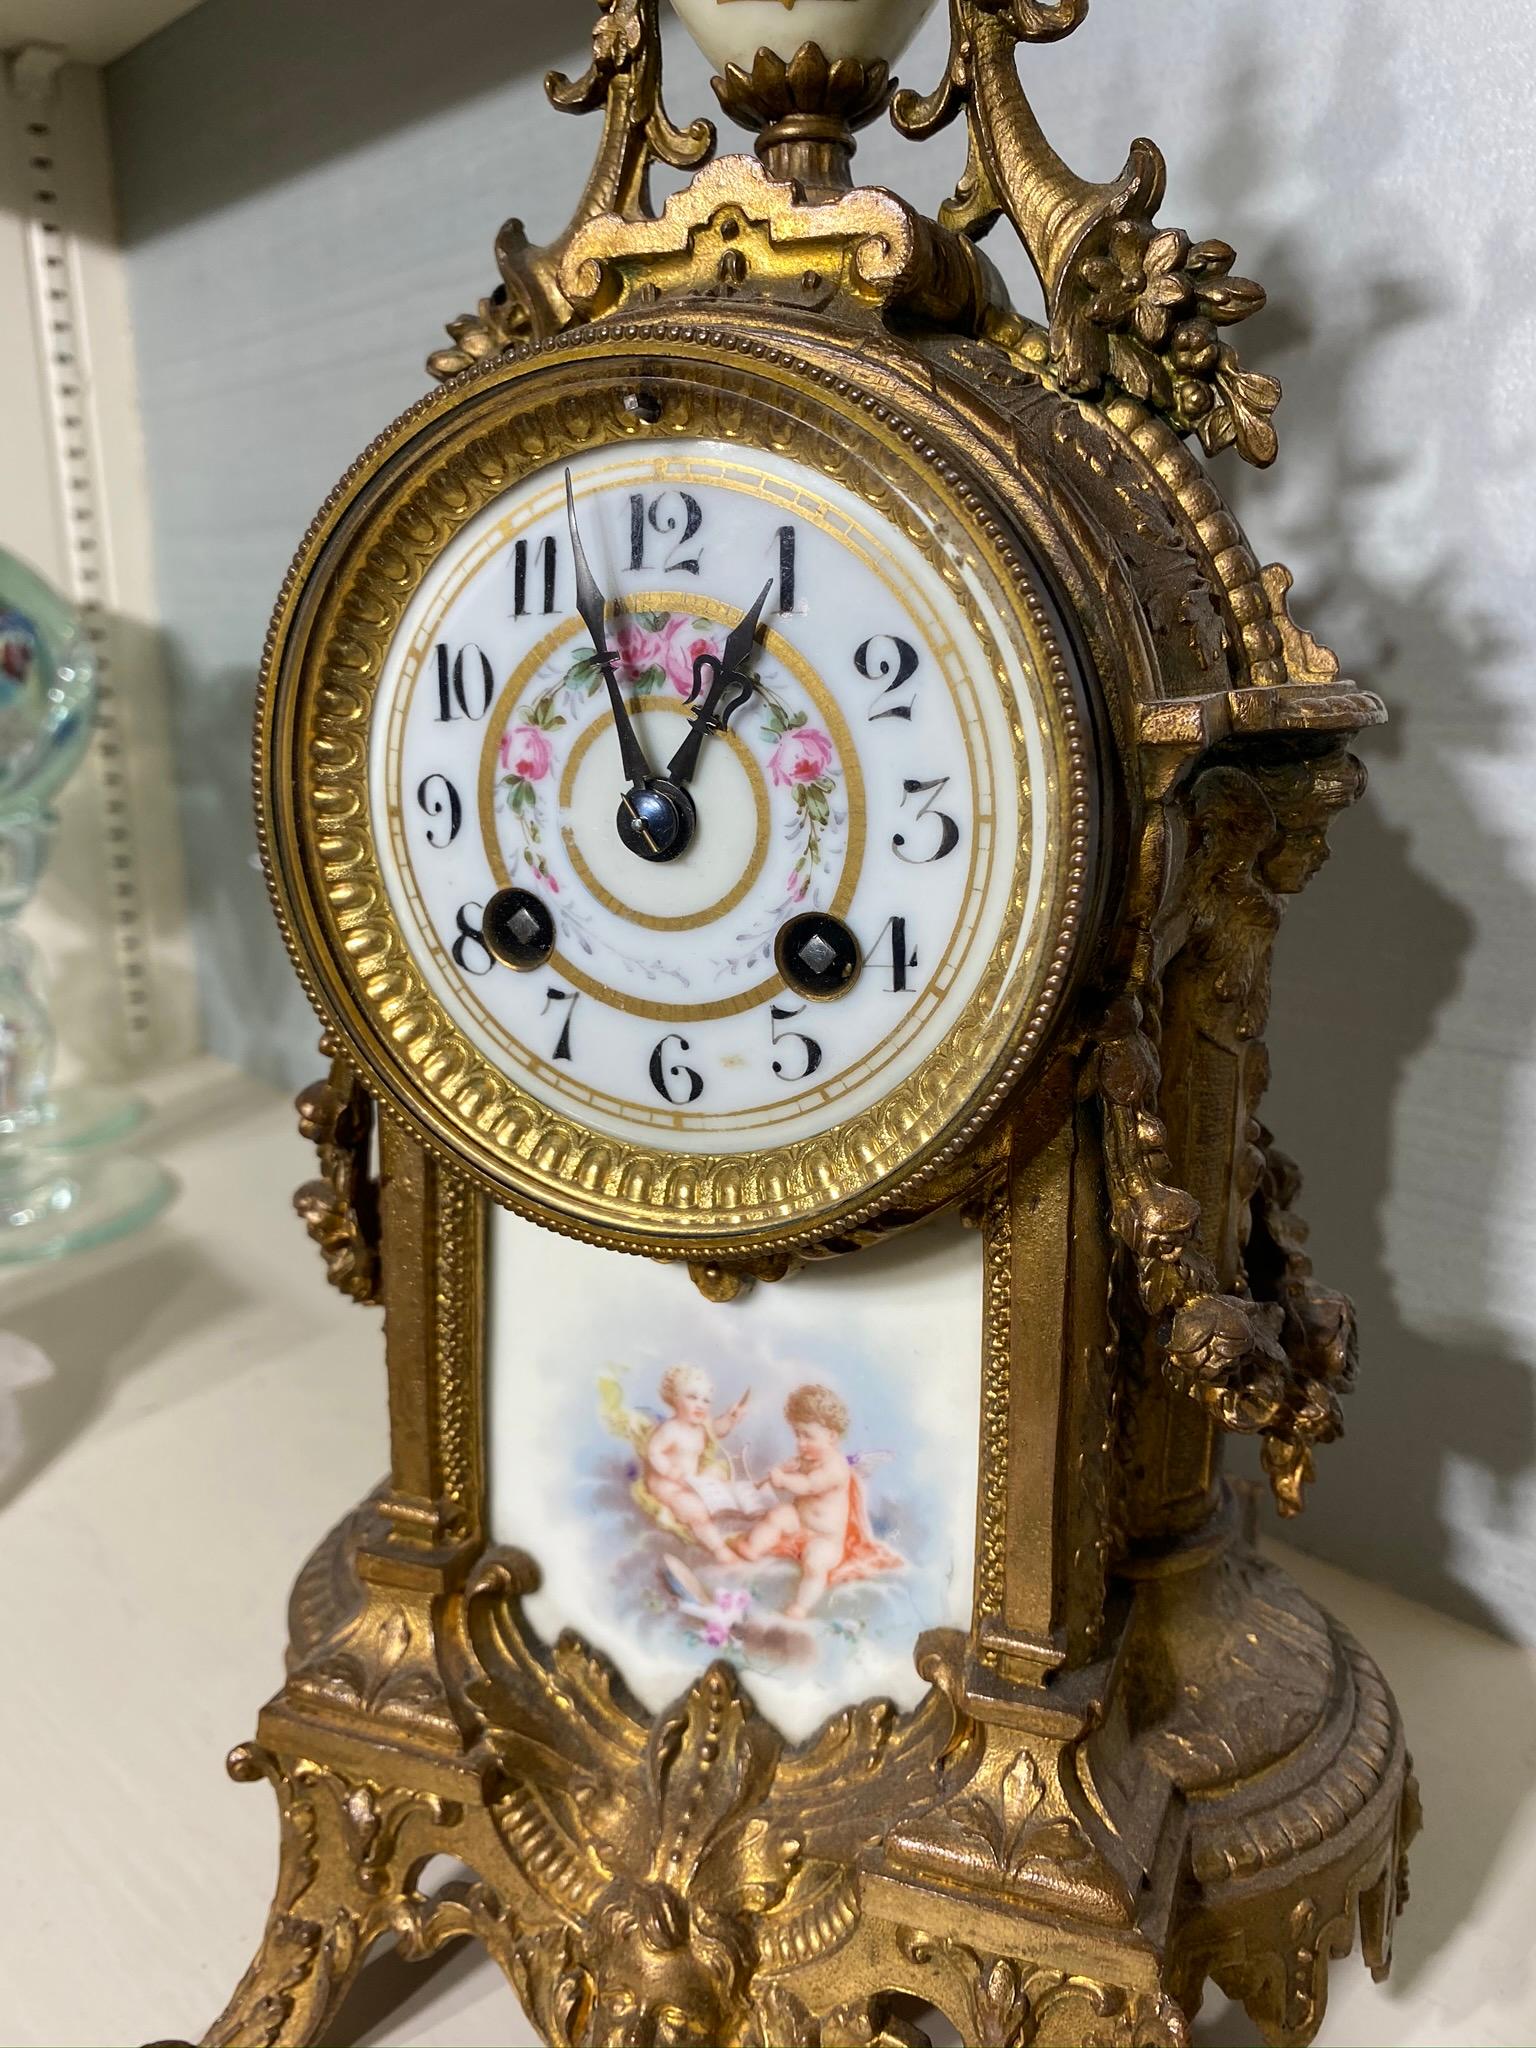 Antique French Mantle Clock - Vincenti - Medaille D'Argent